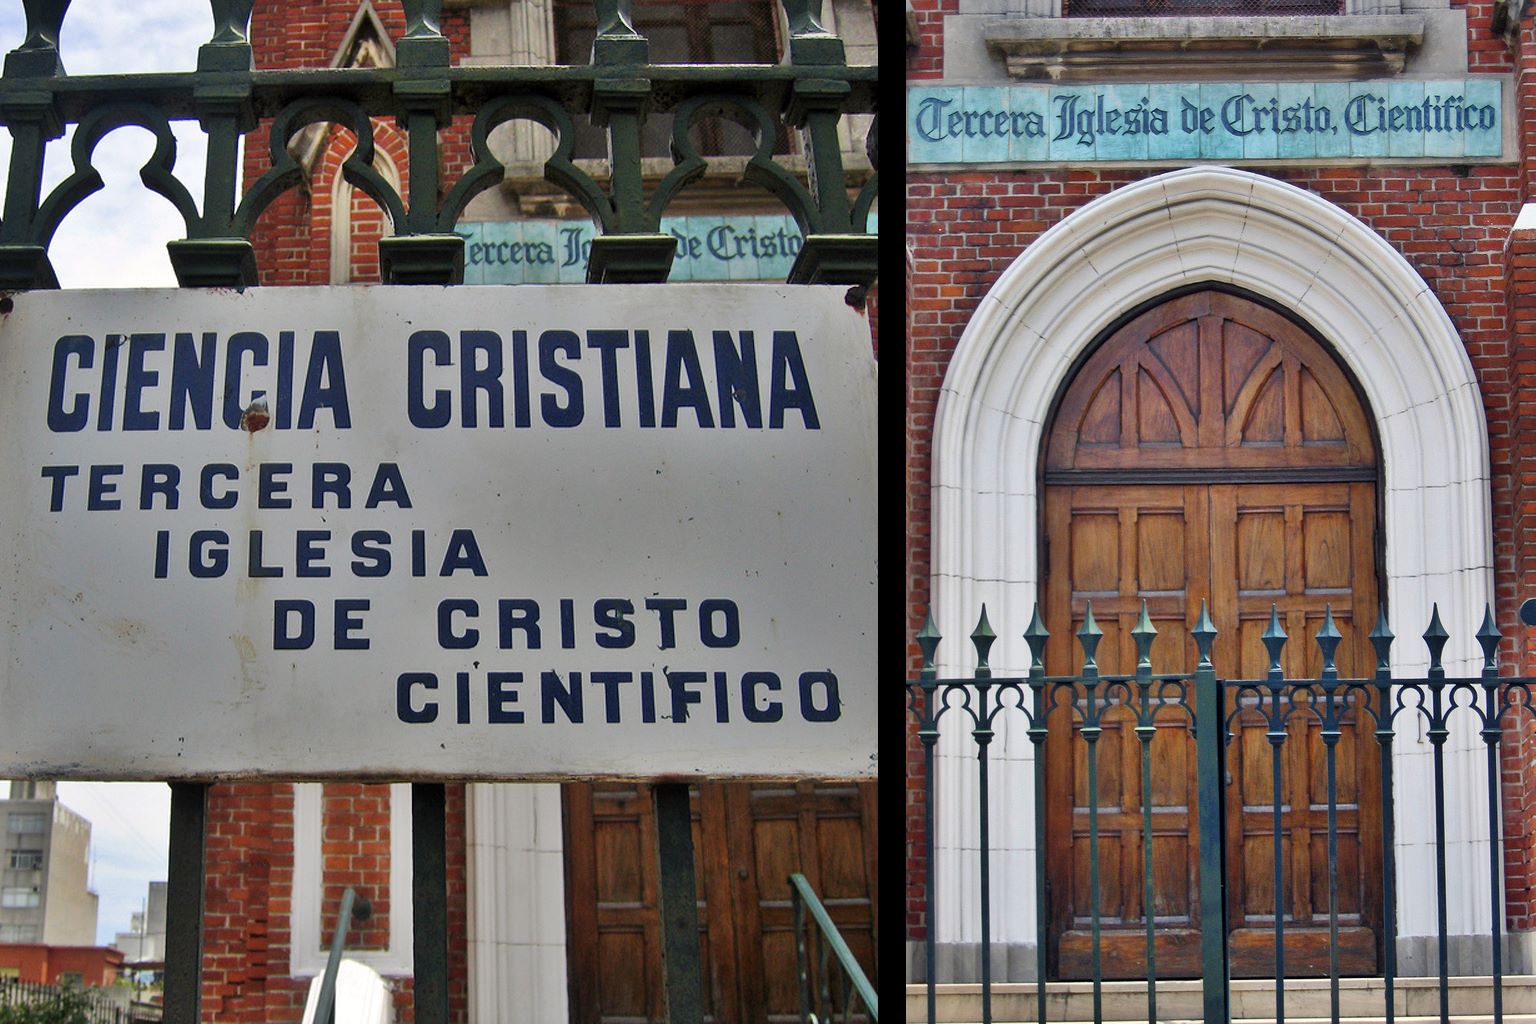 La Iglesia de la ciencia cristiana o “cristo científico”